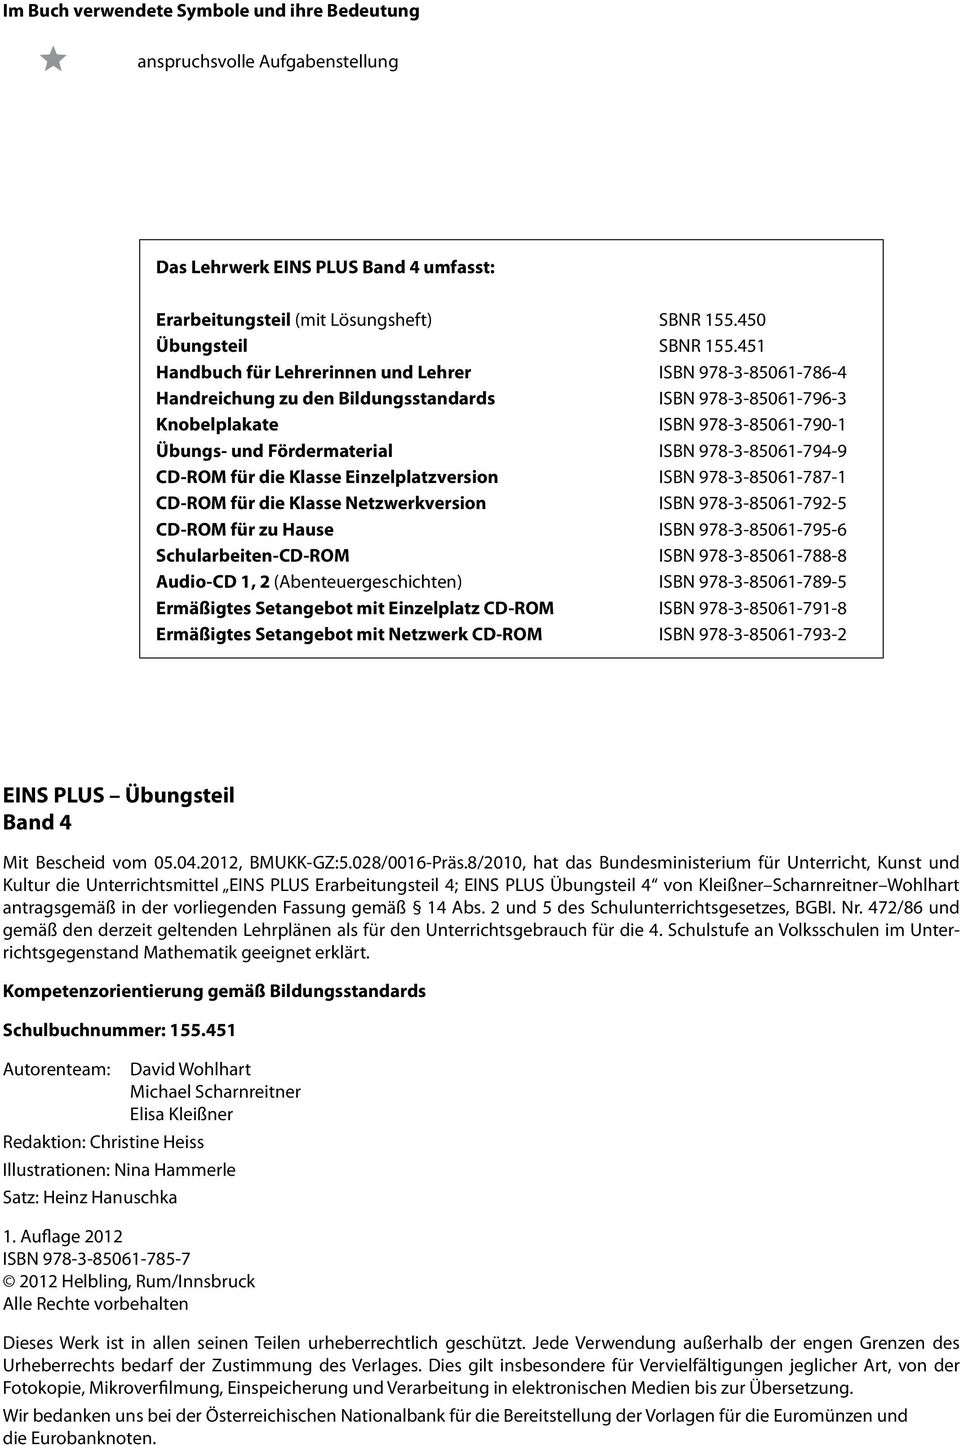 ISBN ---- CD-ROM für die Klasse Netzwerkversion ISBN ---- CD-ROM für zu Hause ISBN ---- Schularbeiten-CD-ROM ISBN ---- Audio-CD, (Abenteuergeschichten) ISBN ---- Ermäßigtes Setangebot mit Einzelplatz